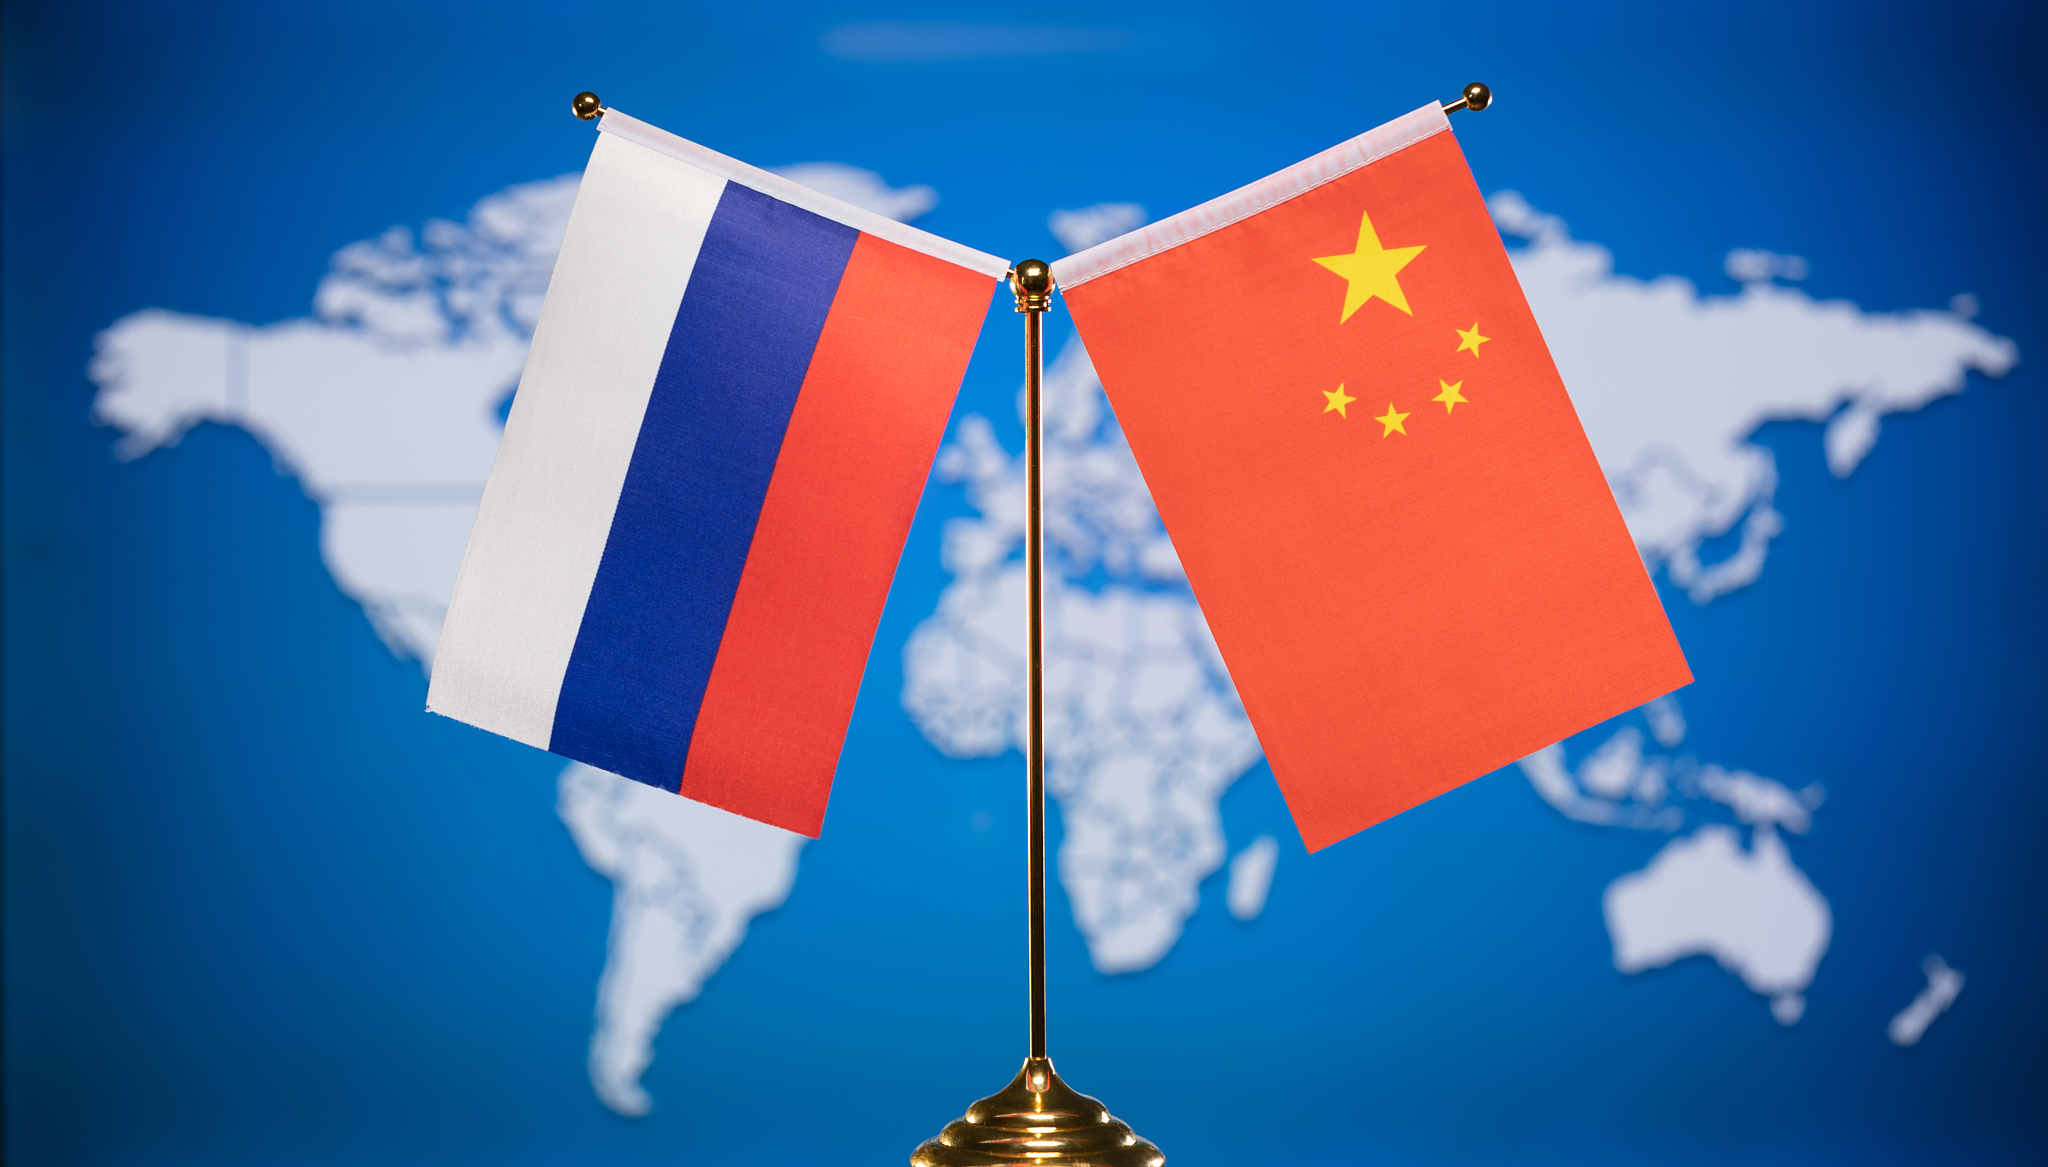 北京连续有罕见动作 中俄关系微妙变化？ ＊ 阿波罗新闻网